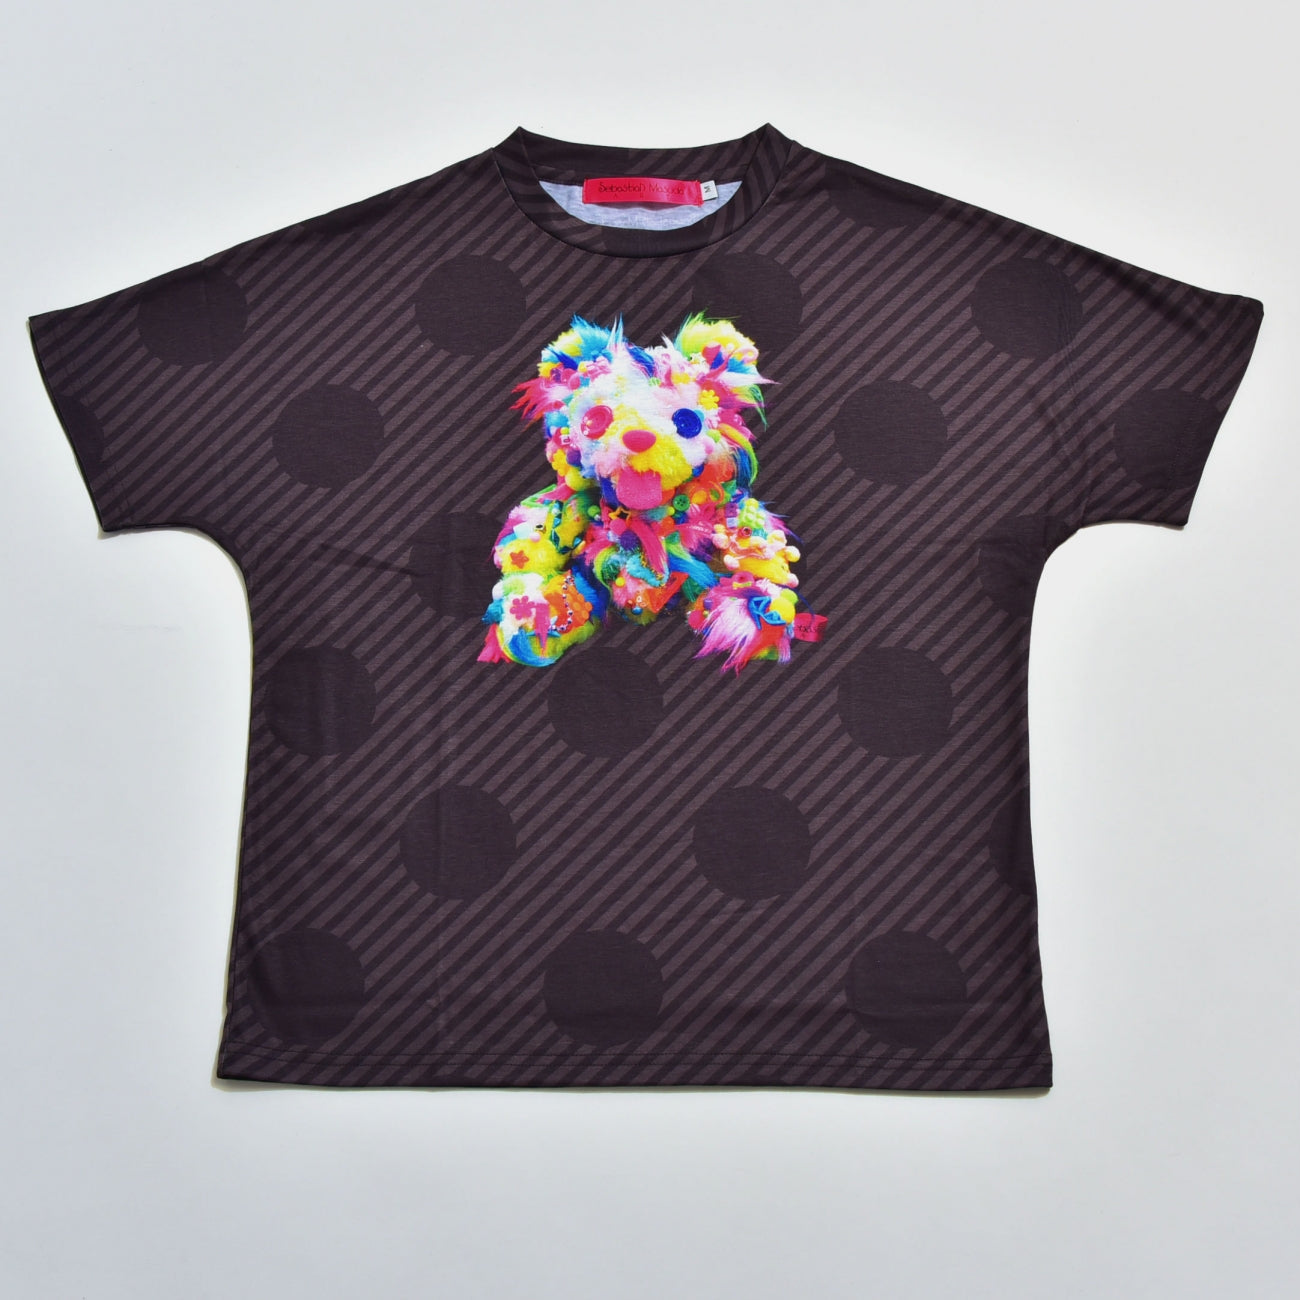 6% DOKIDOKI “Your Bear” t-shirt